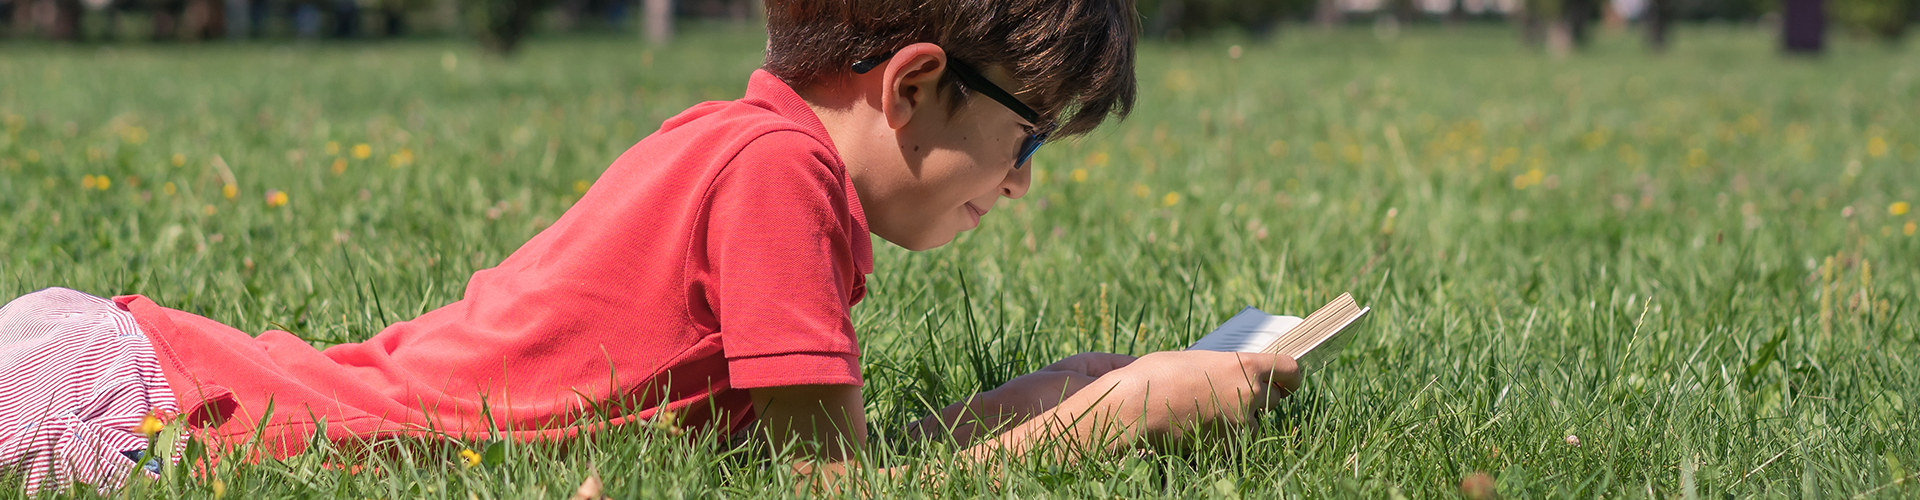 boy reading in grass